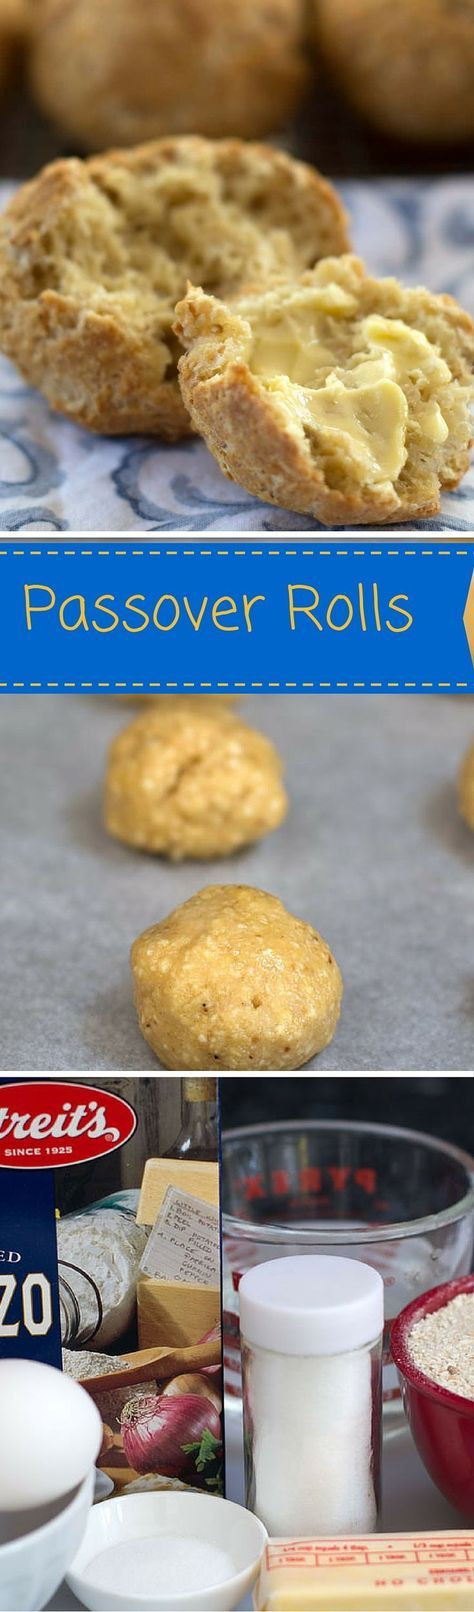 Passover Rolls Recipe
 Passover Rolls Recipe